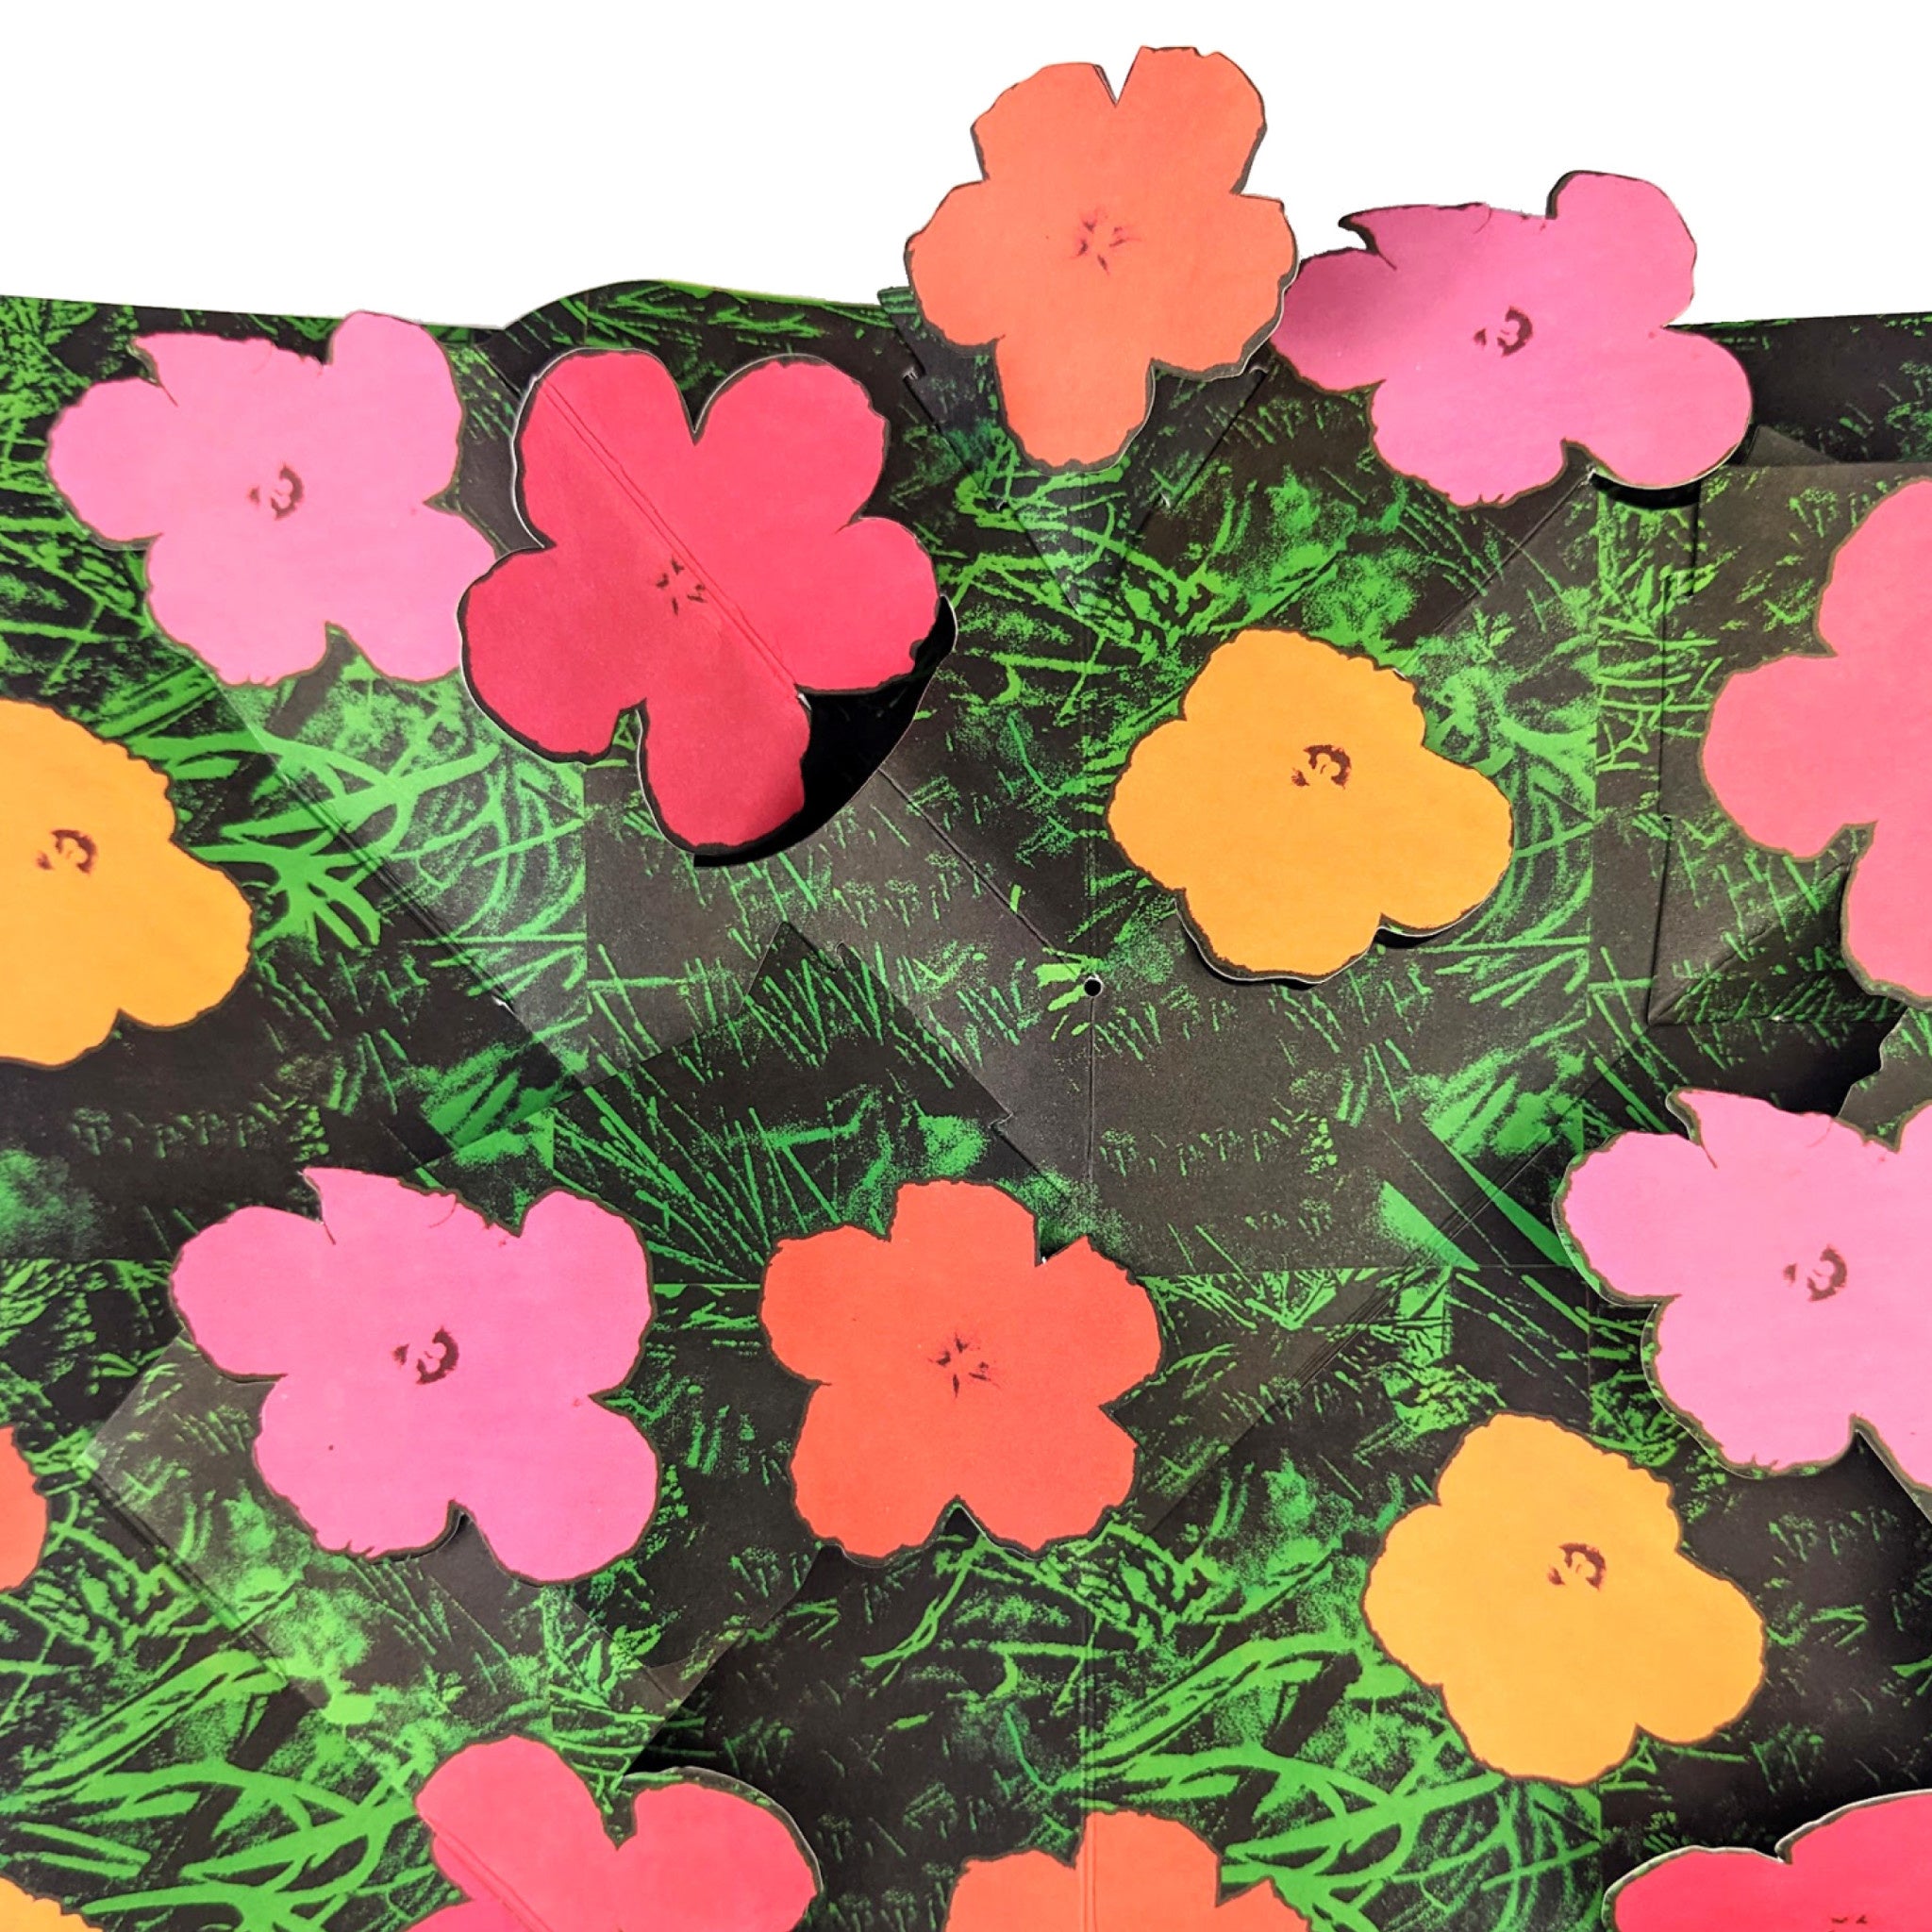 Andy Warhol FLOWERS Pop Up Card - Wynwood Walls Shop